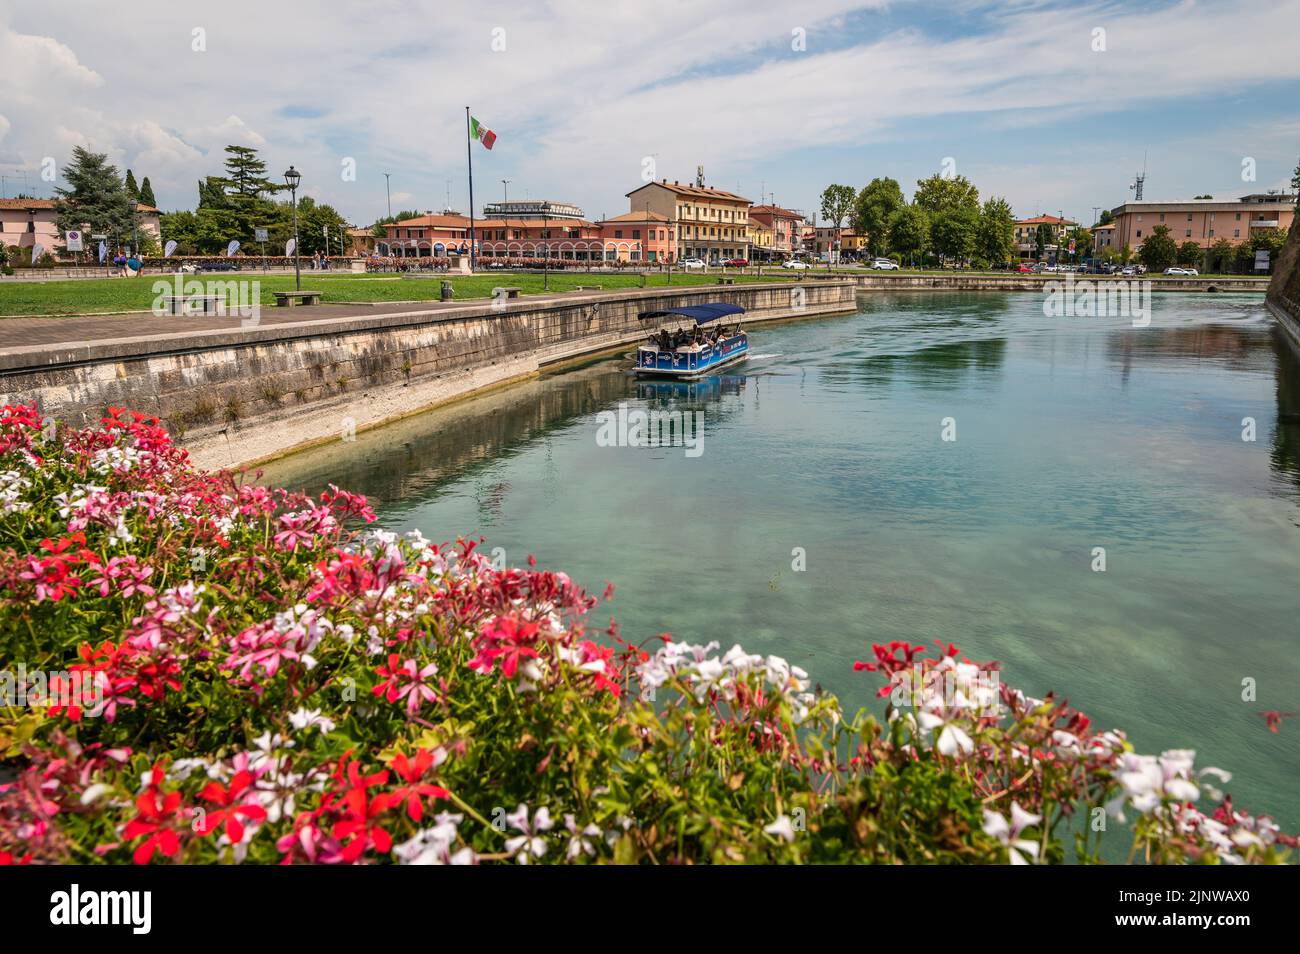 Peschiera del Garda - grazioso borgo con case colorate nel bel lago Lago di Garda – Provincia di Verona – regione Veneto – Italia settentrionale, Foto Stock